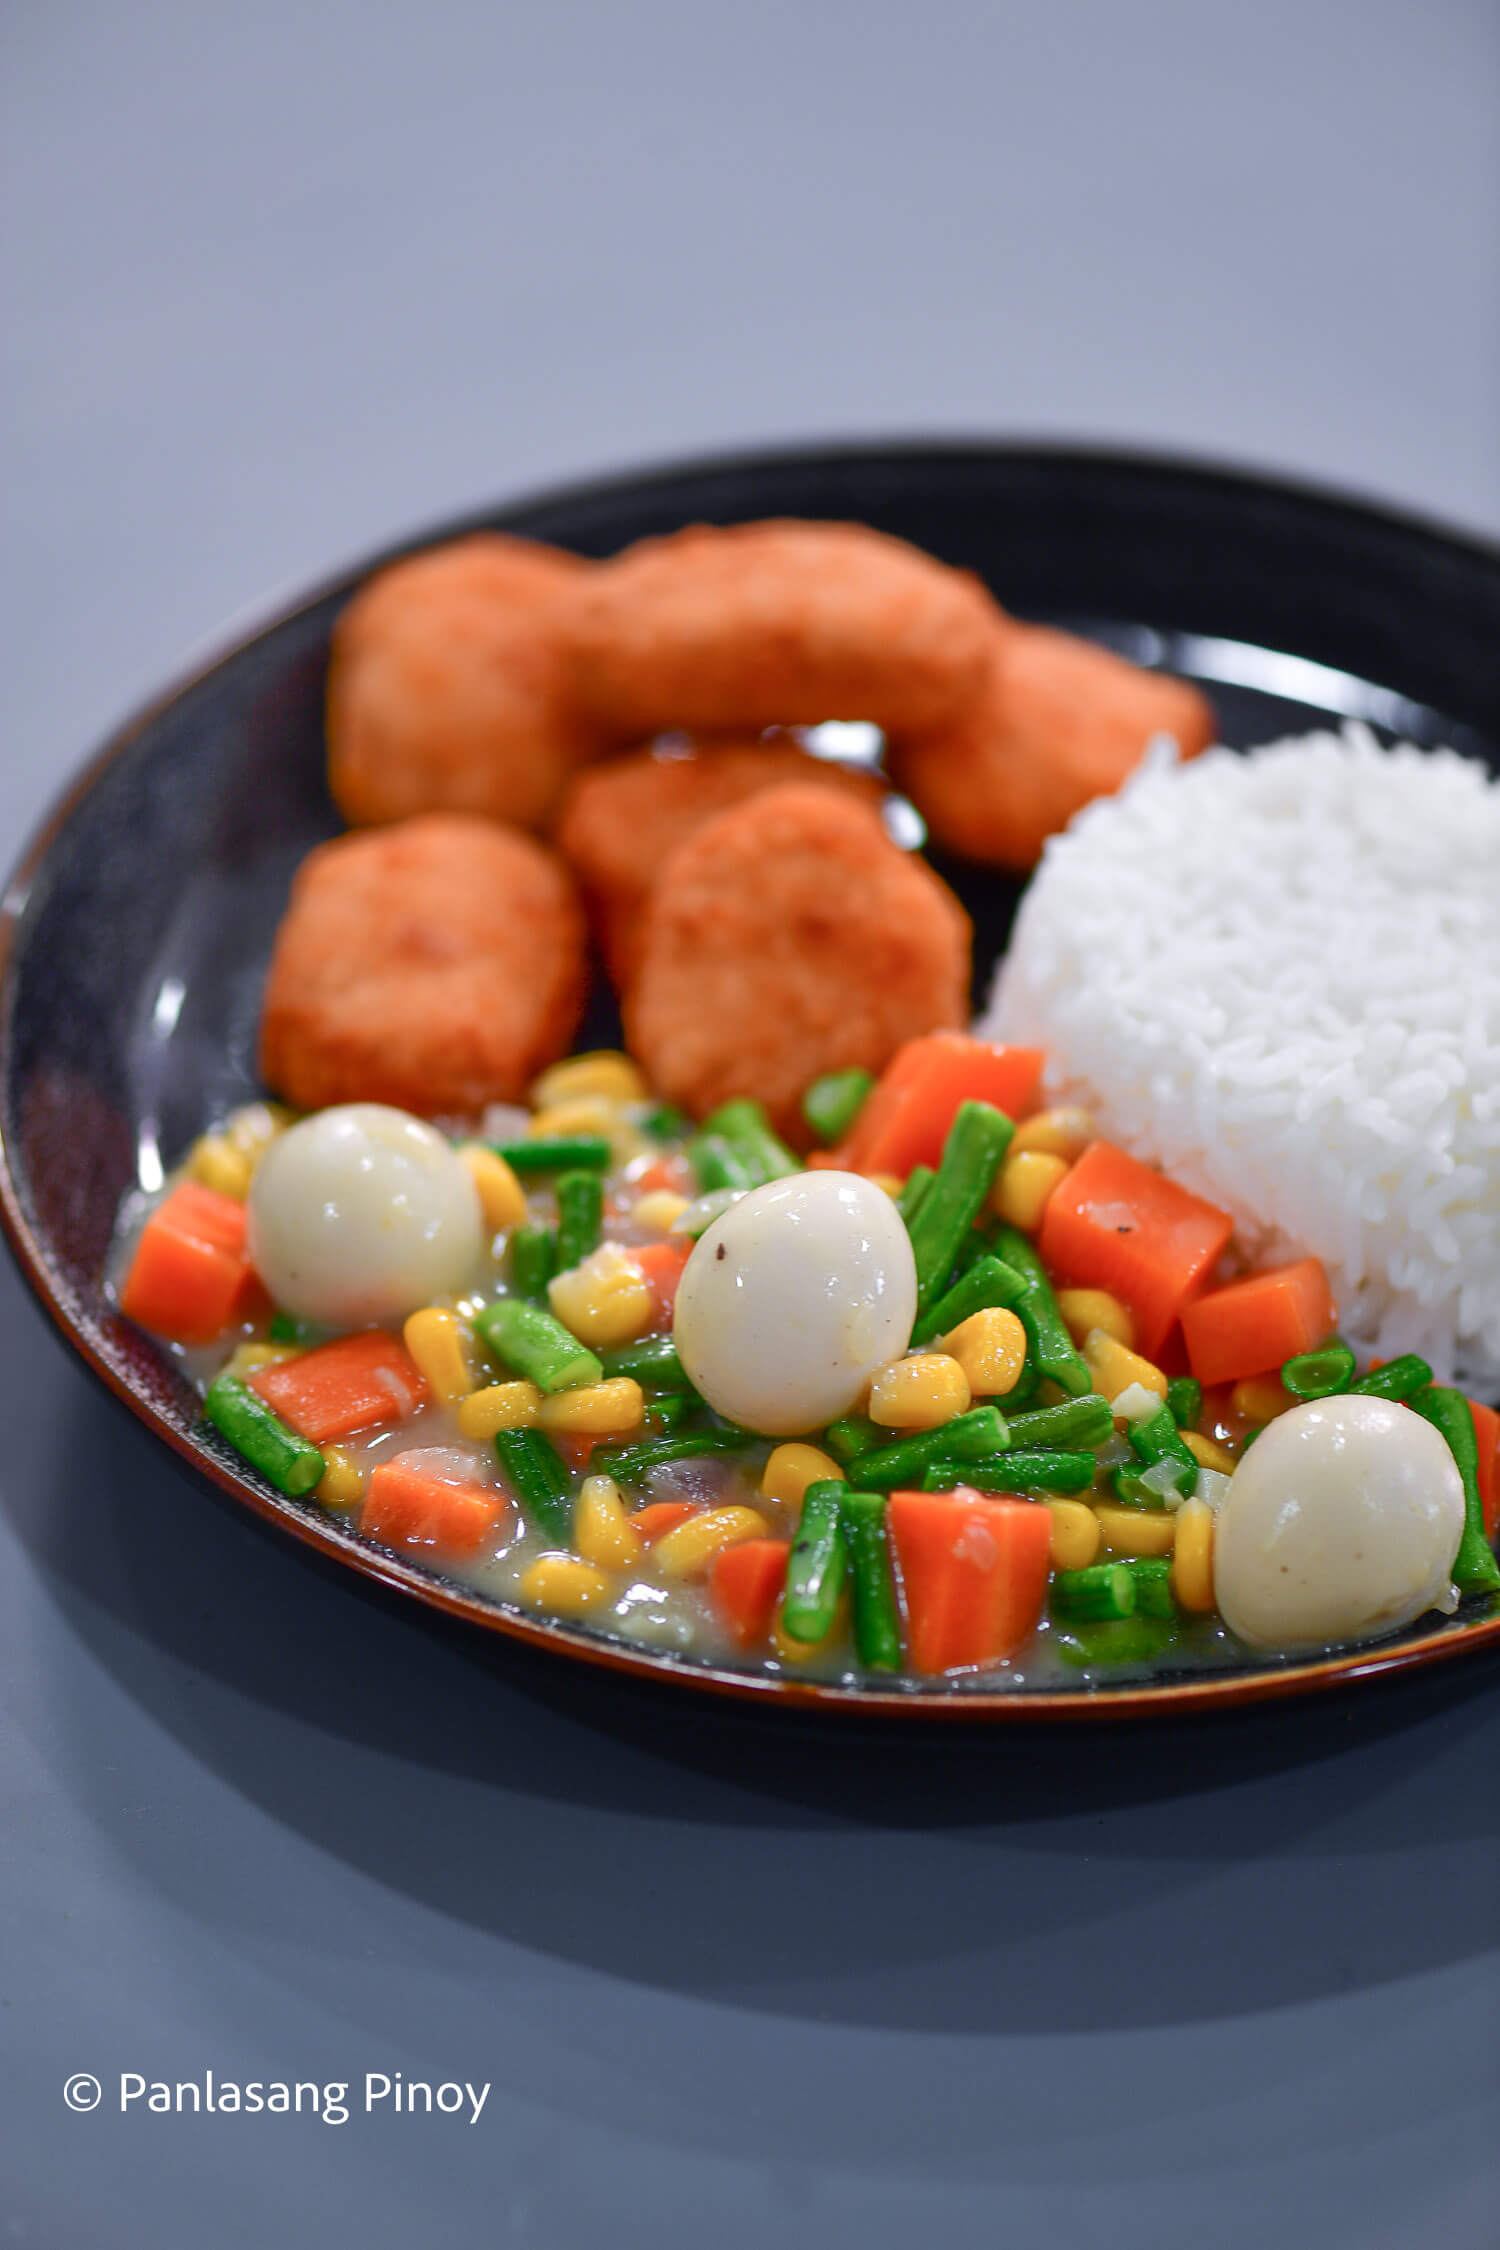 鸡块配米饭和蔬菜gydF4y2Ba